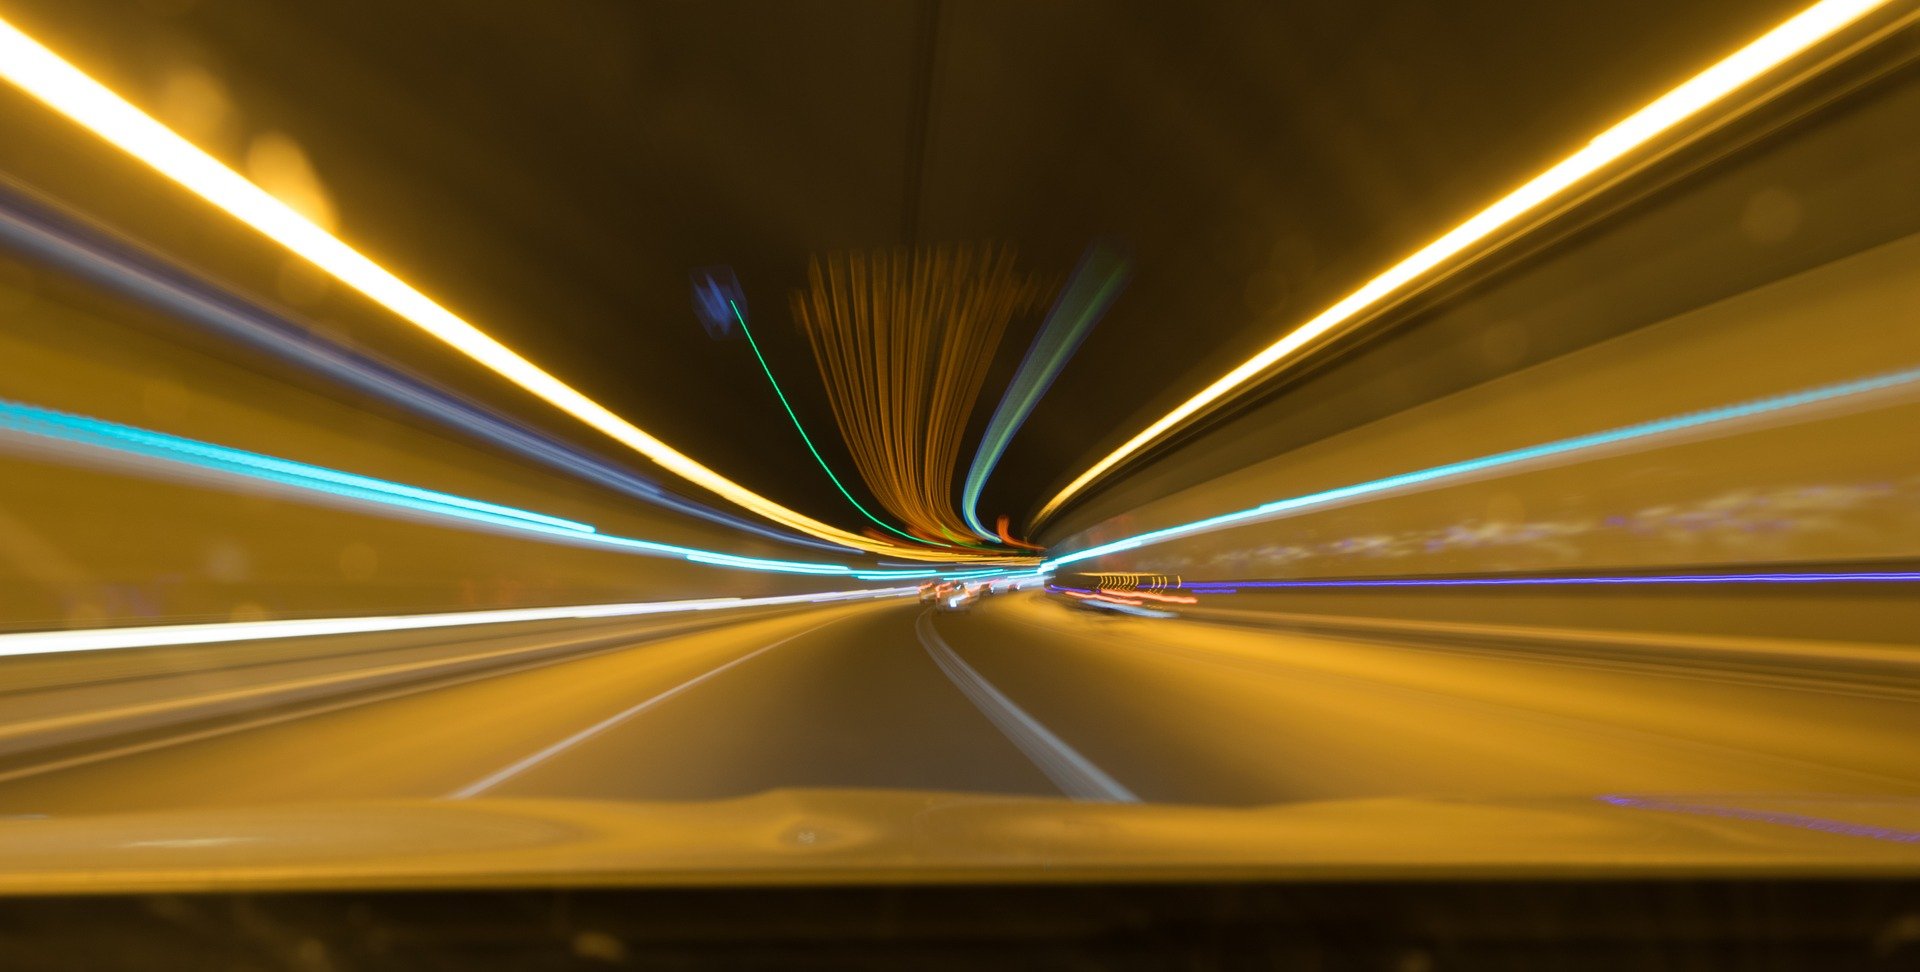 Speeding through tunnel